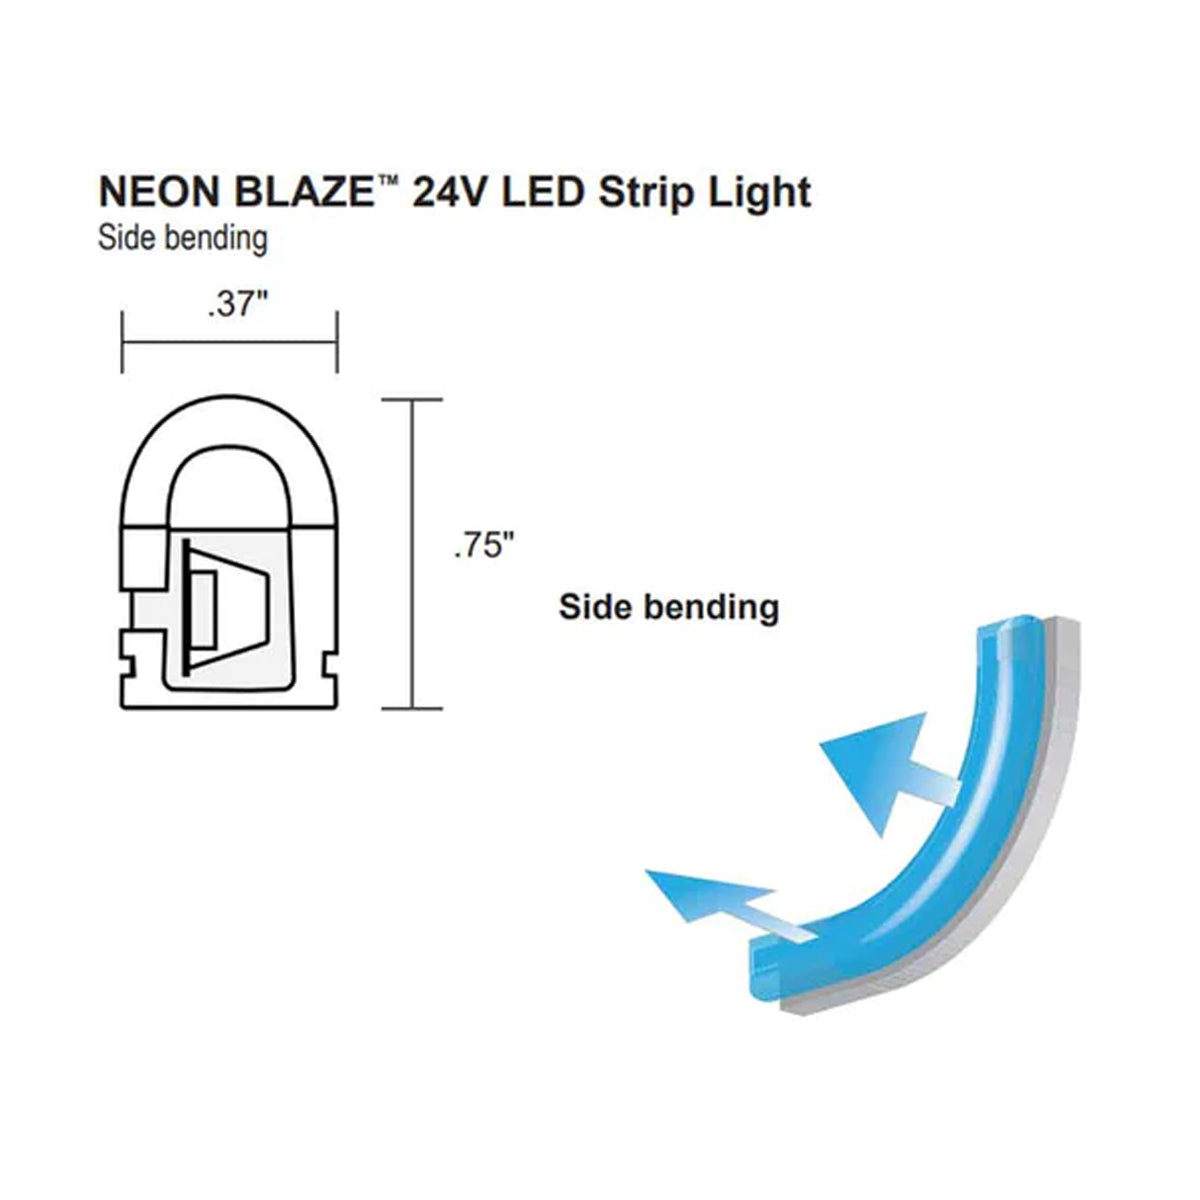 Neon BLAZE LED Neon Strip Light, Green, 24V, Side Bending